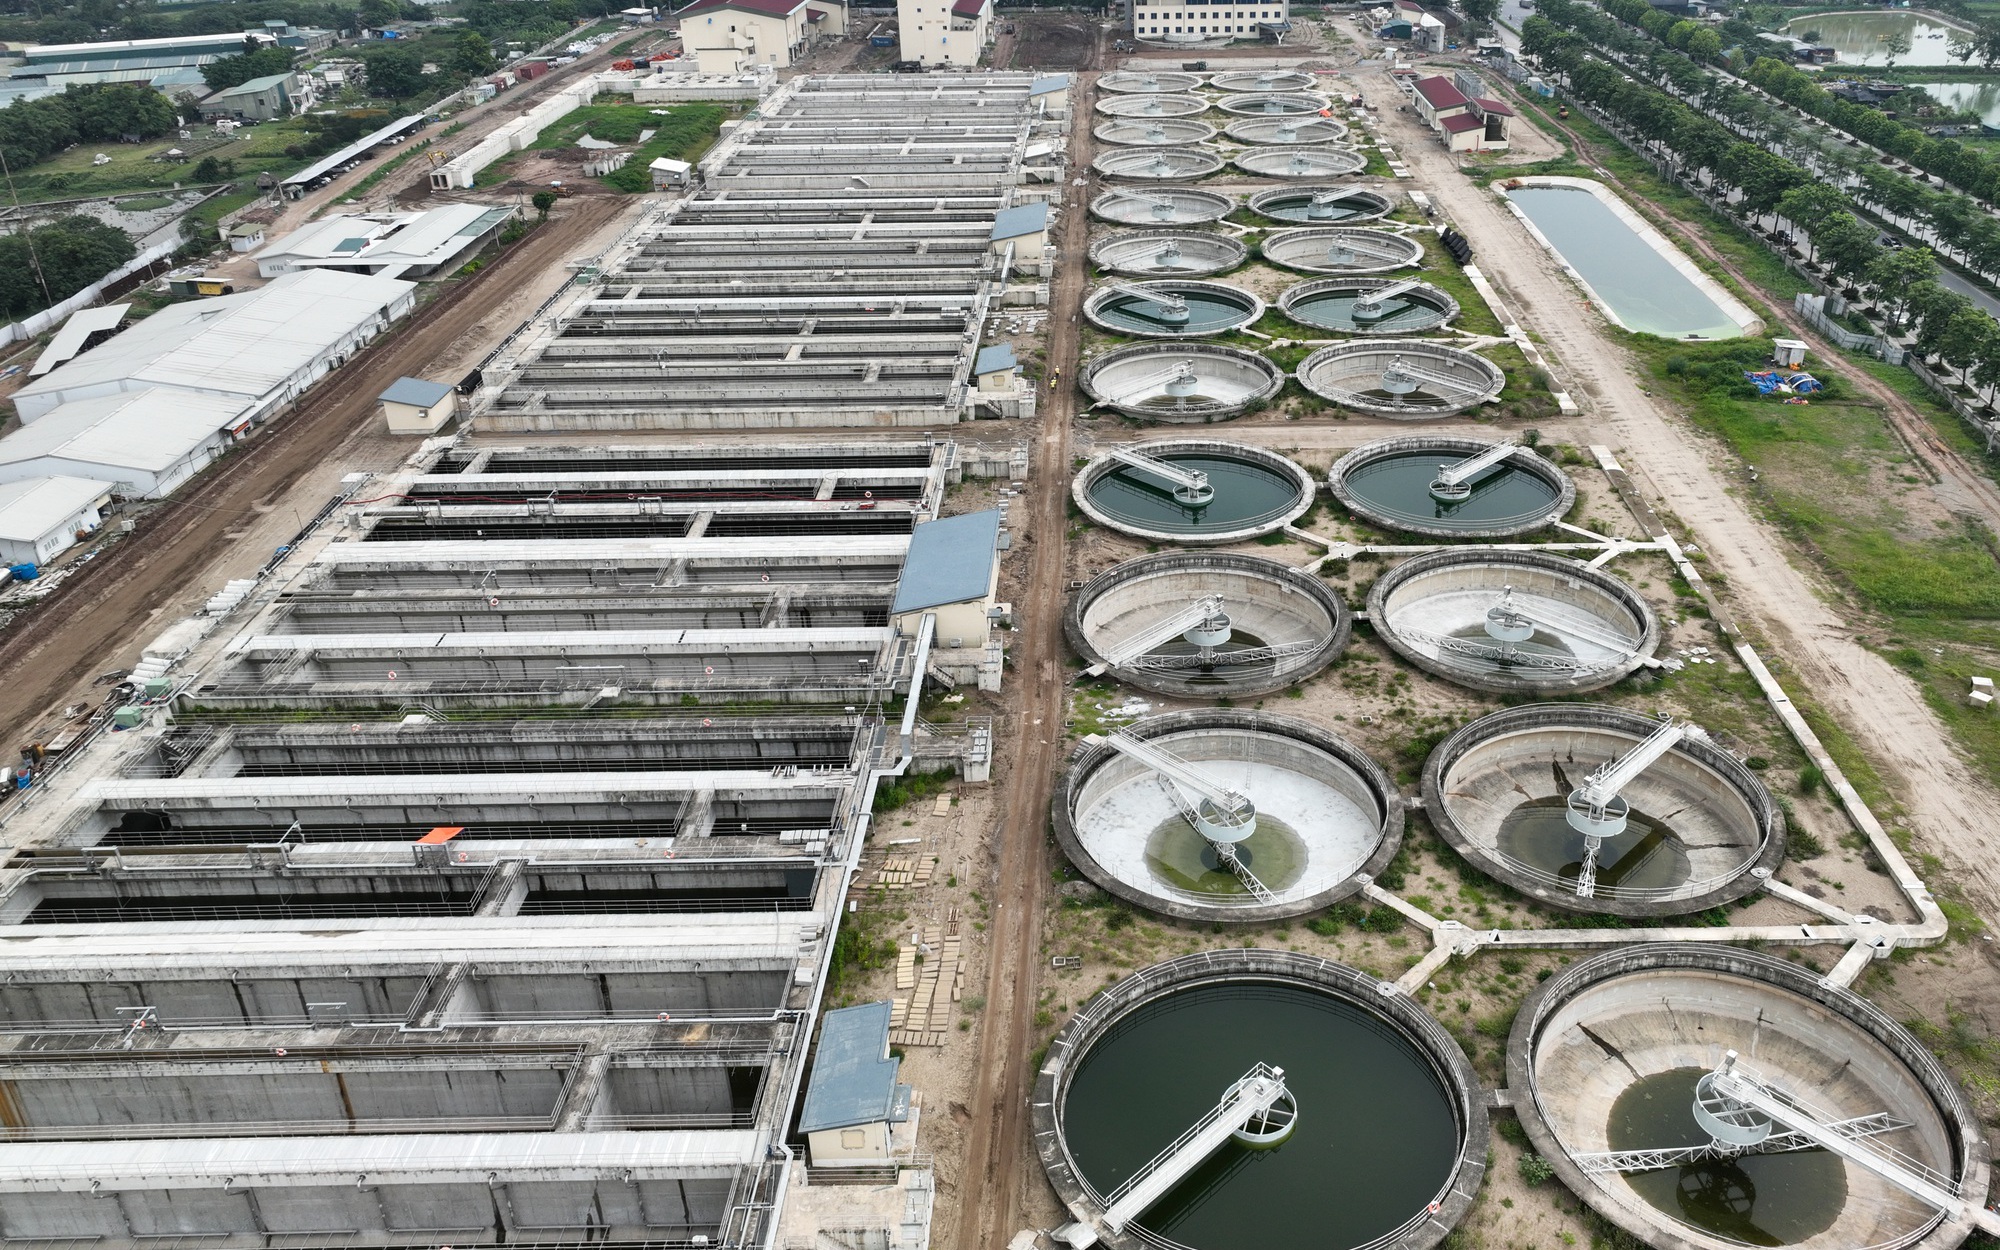 Hình hài nhà máy xử lý nước thải tại Hà Nội được đầu tư hơn 16.000 tỷ đồng sau 7 năm thi công